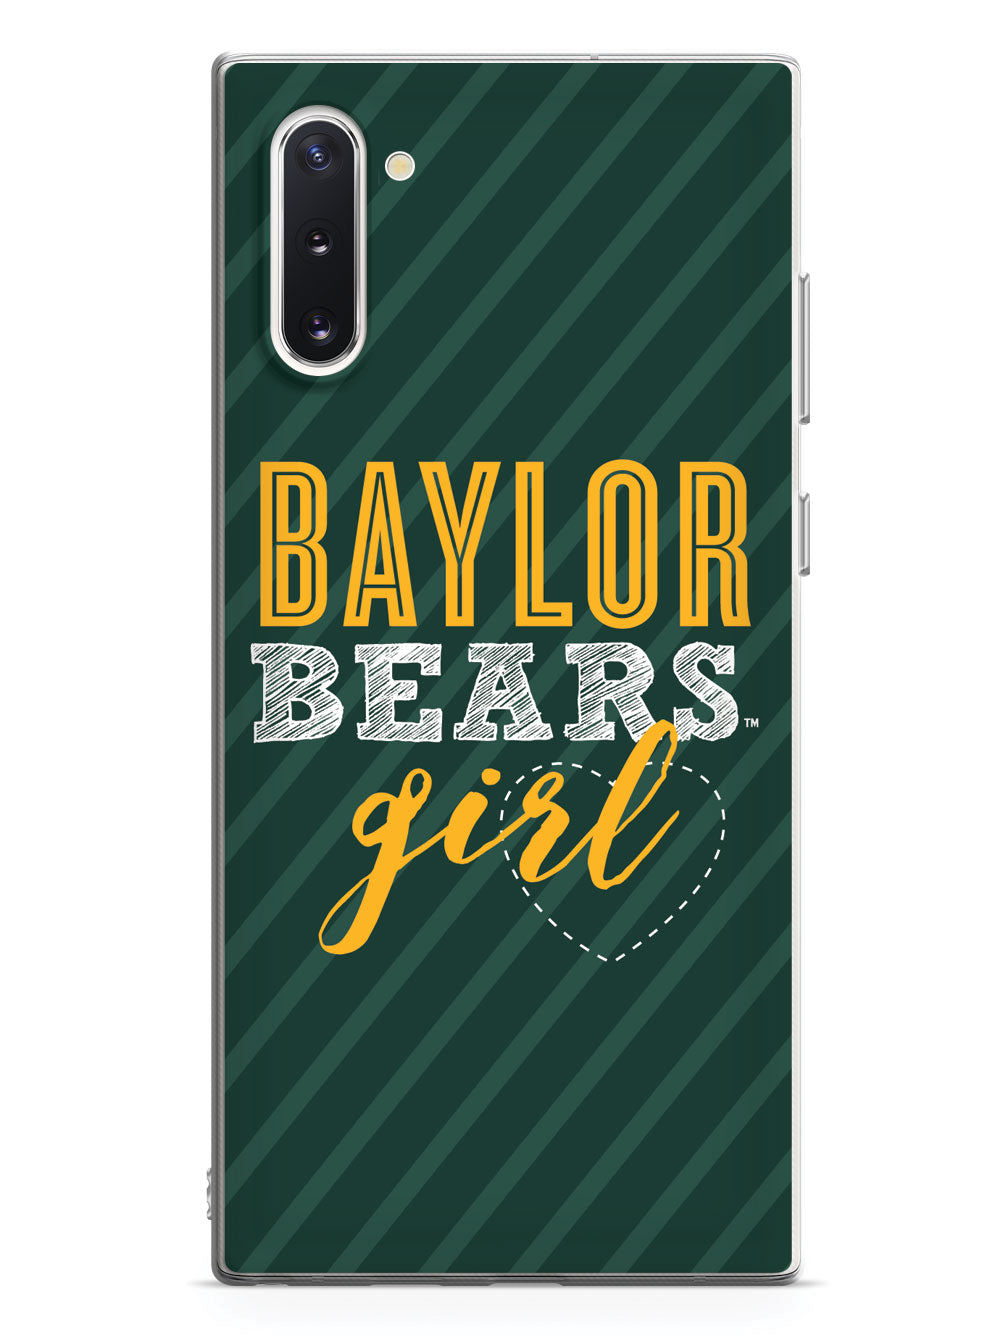 Baylor Bears Girl Case